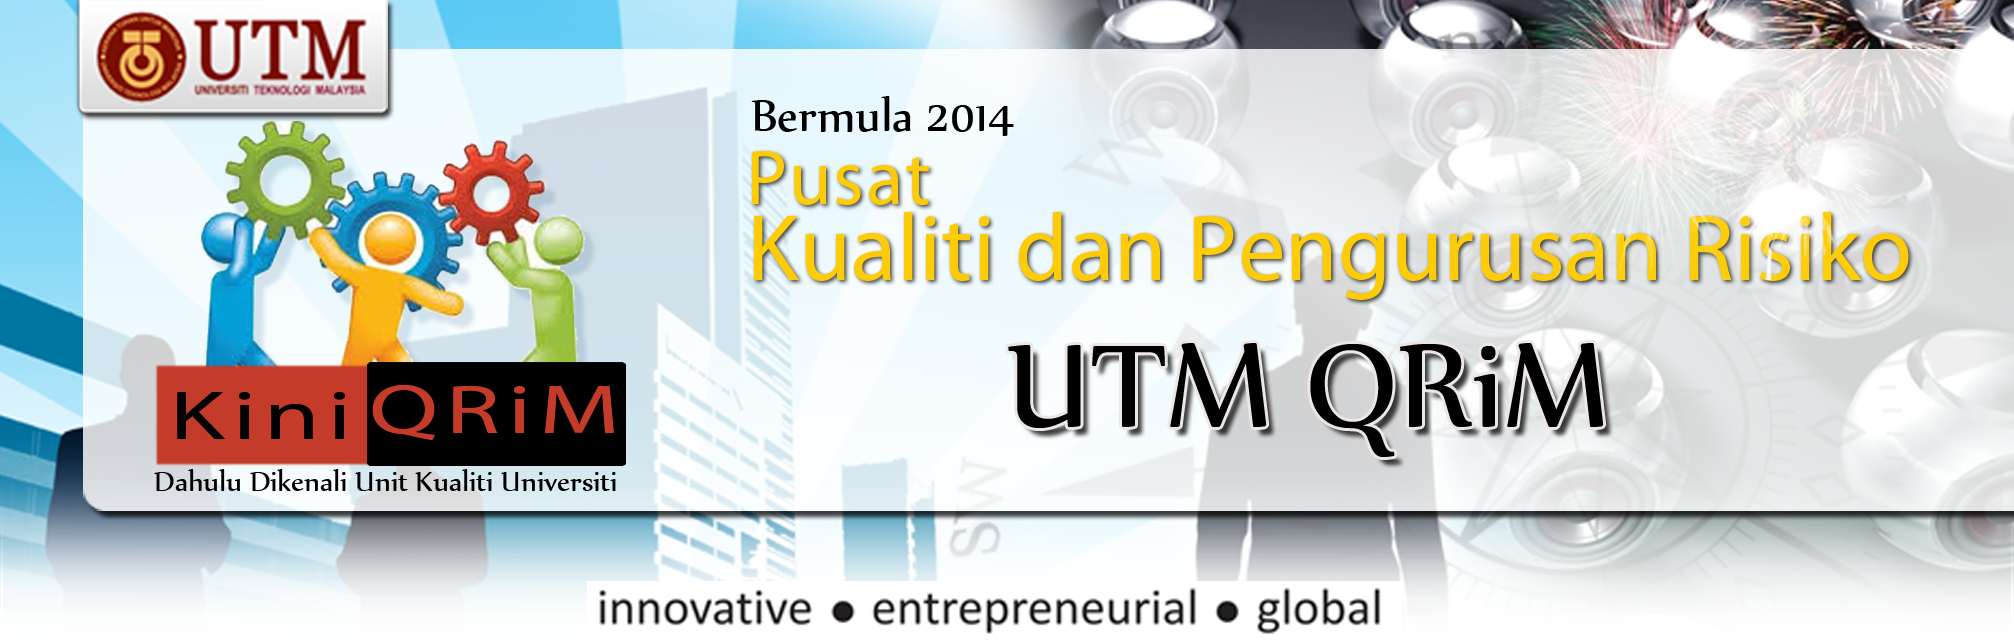 UTM QRiM (Pusat Kualiti dan Pengurusan Risiko)